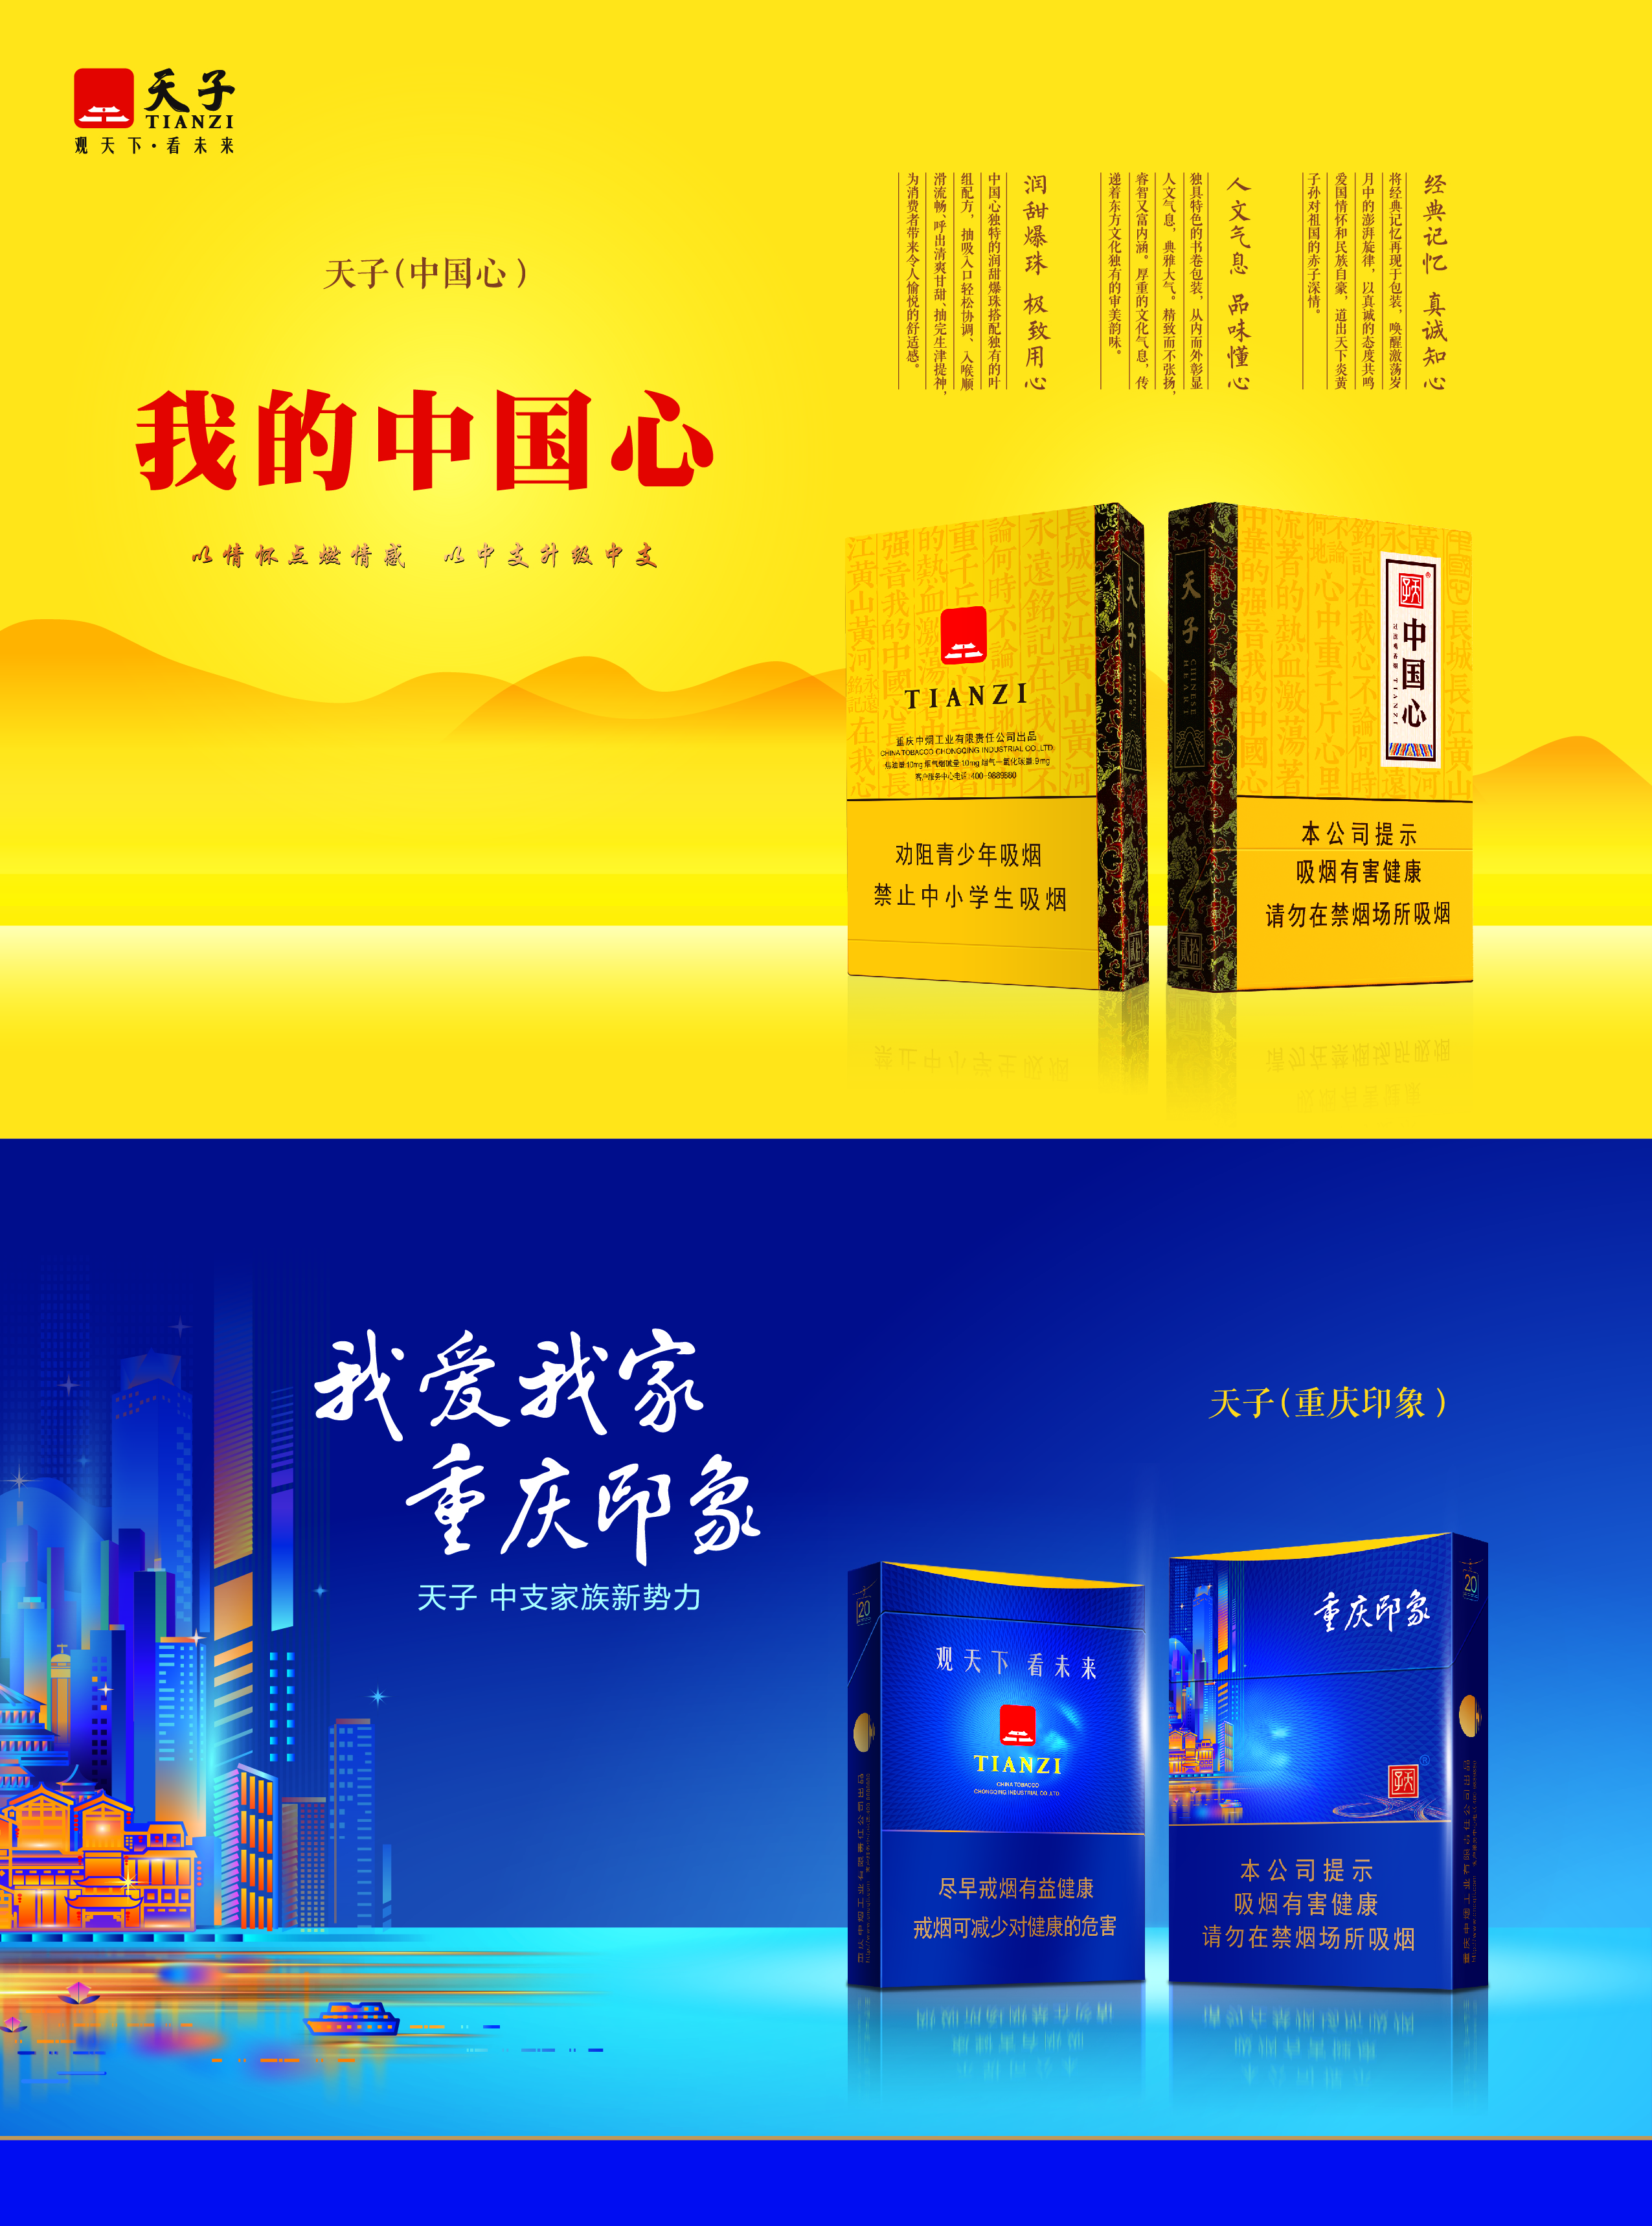 特别鸣谢重庆中烟工业有限责任公司双节福利大放送